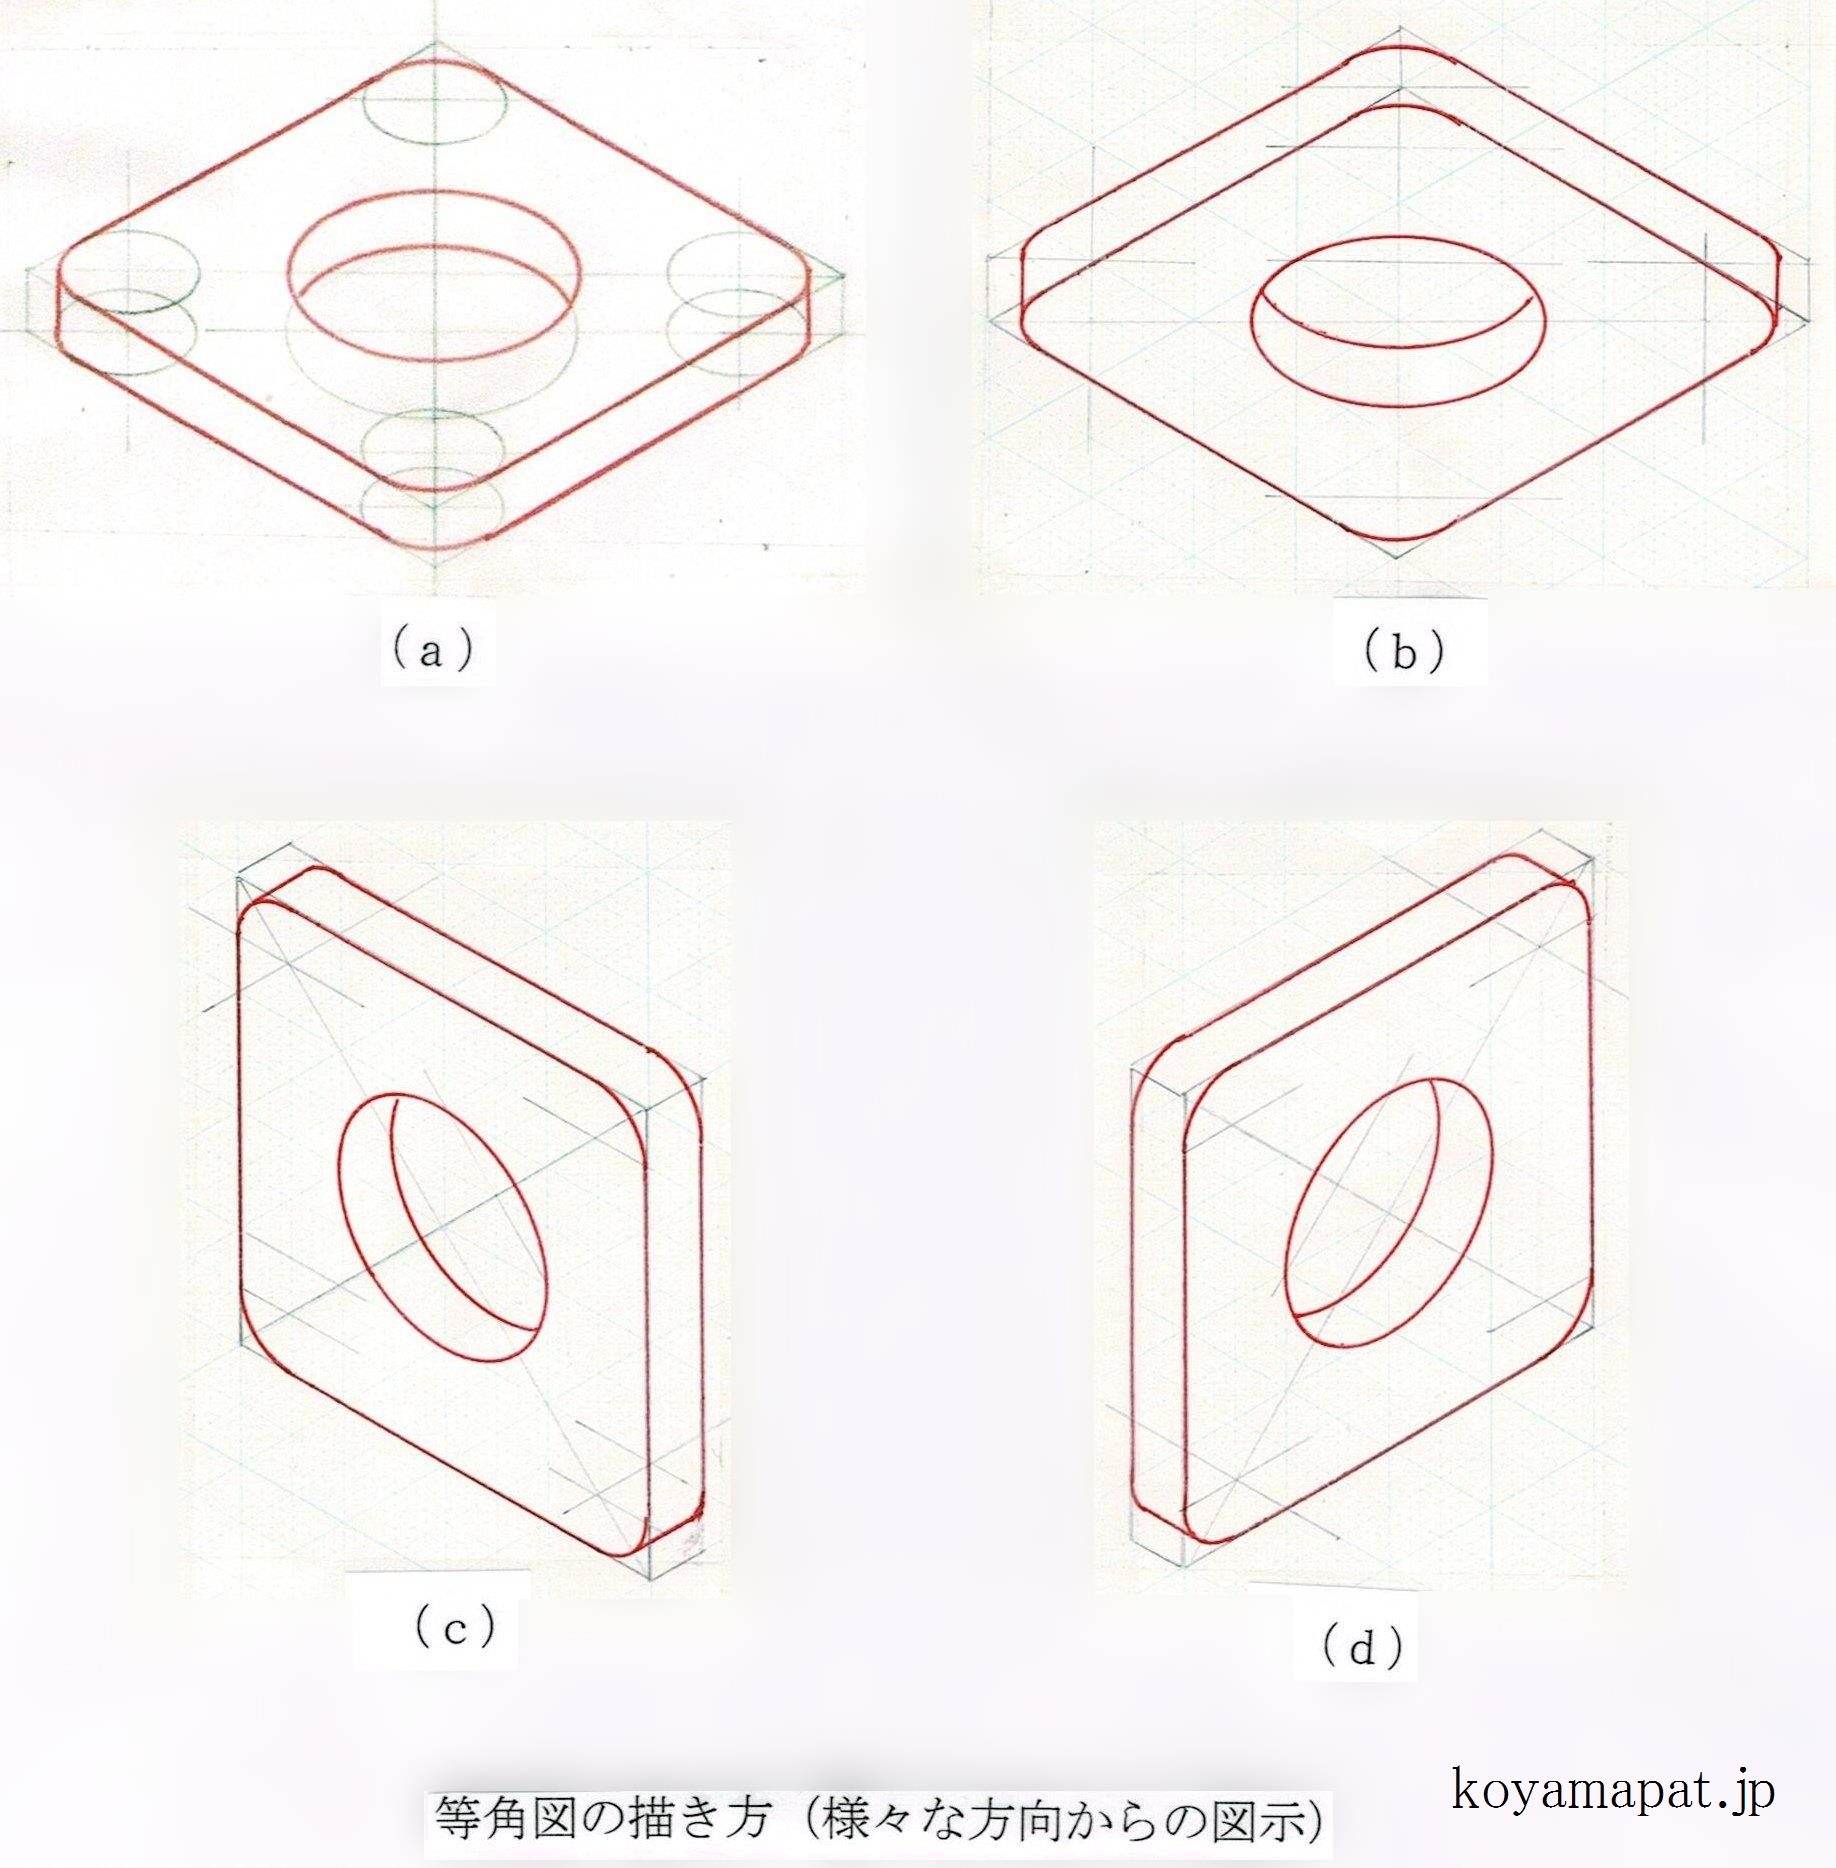 等角図の描き方（様々な方向からの図示）